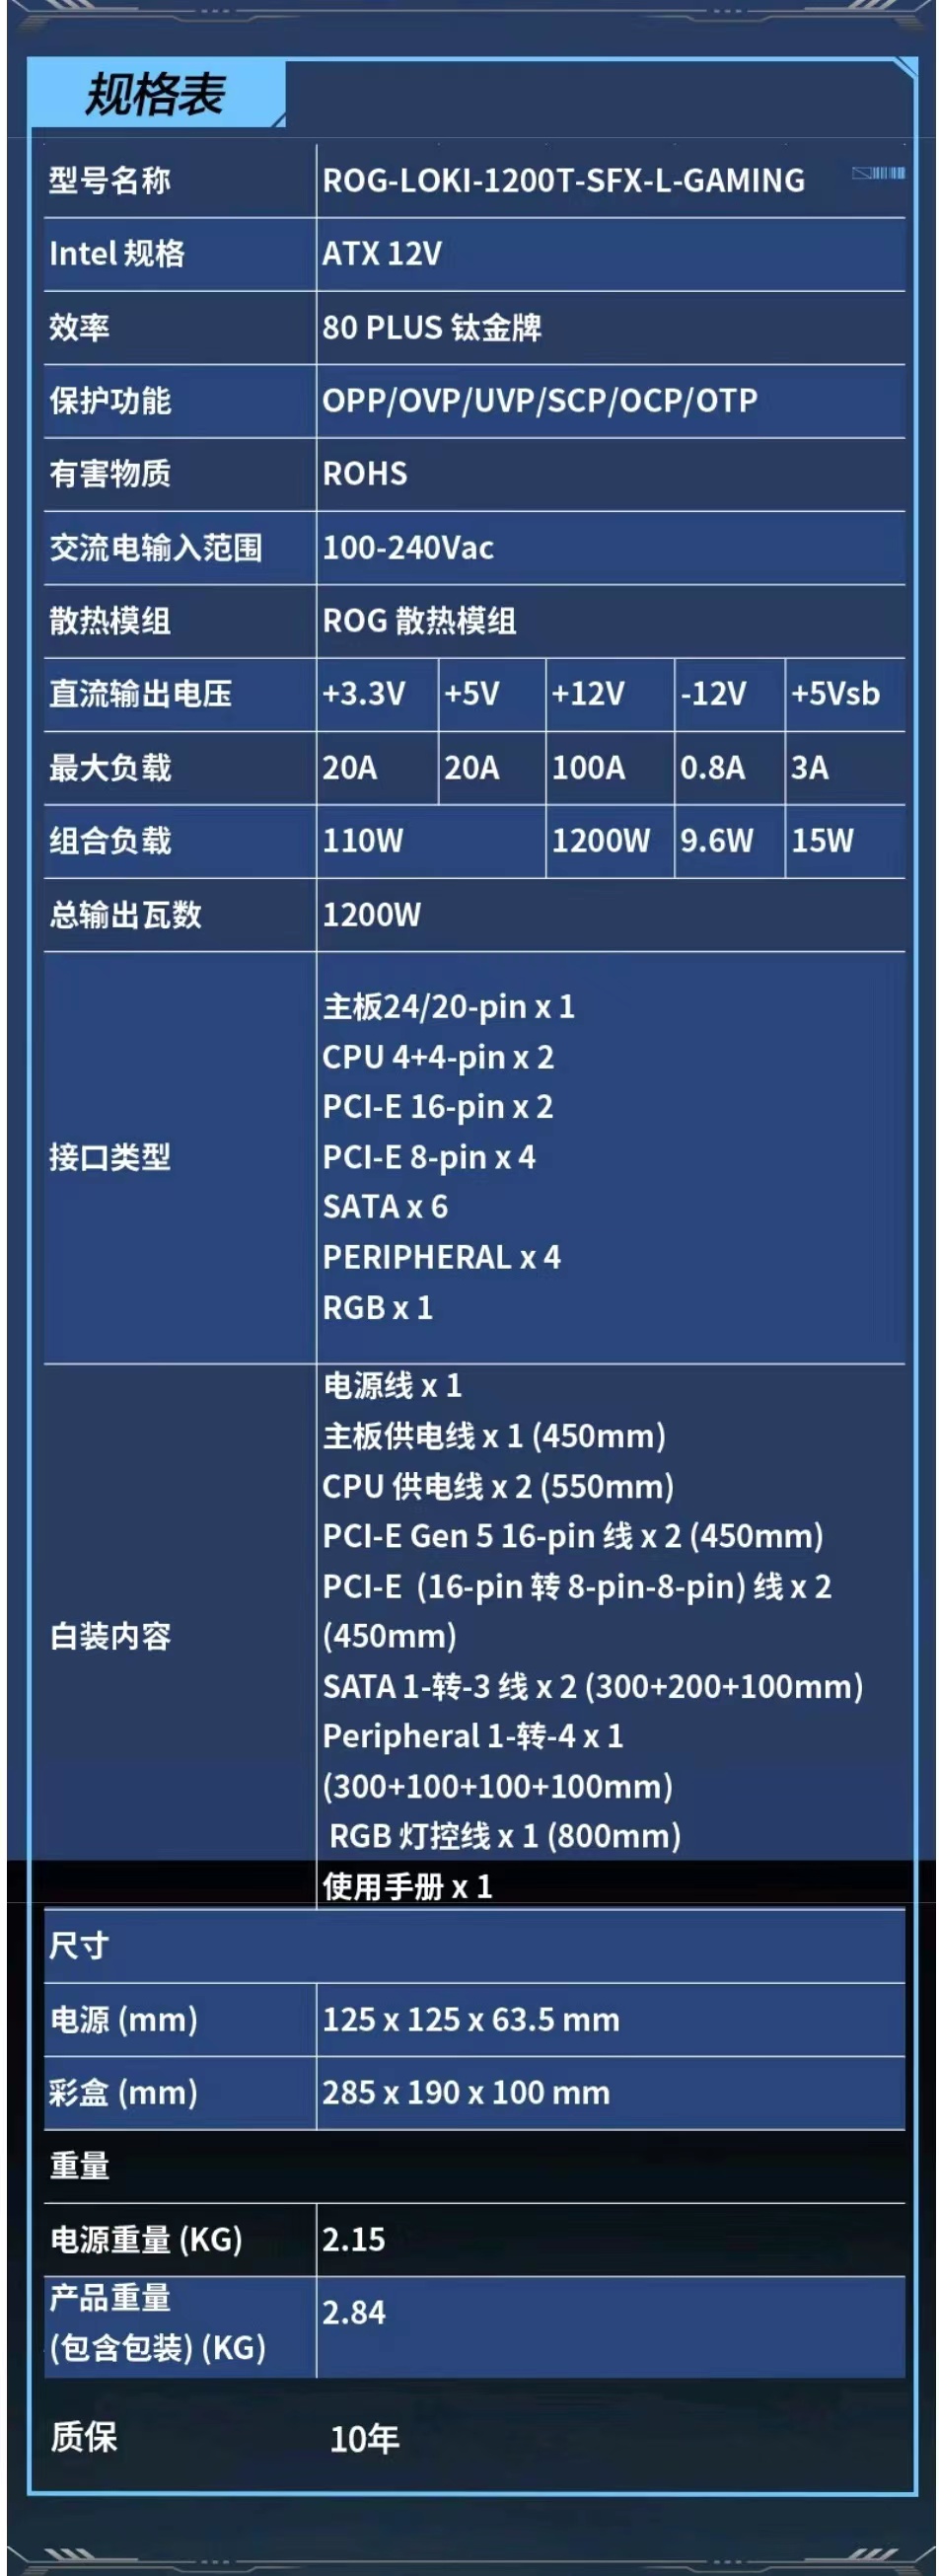 华硕 ROG 洛基 SFX-L 电源系列新增 1200W 钛金牌版本，定价 2299 元